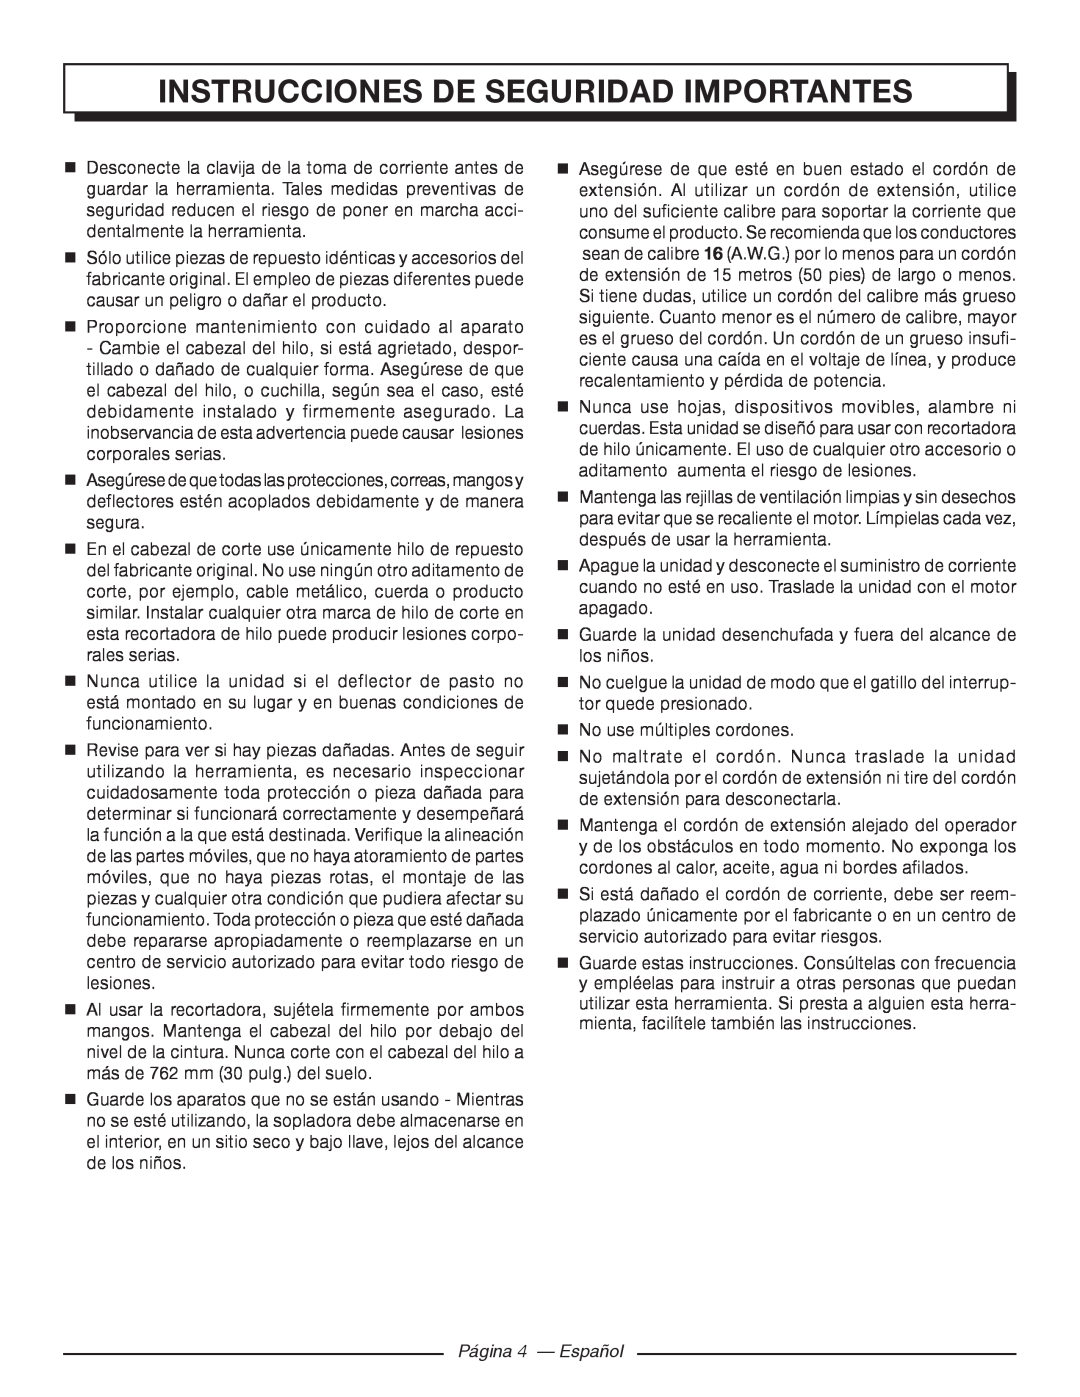 Homelite UT41120 manuel dutilisation Página 4 - Español, Instrucciones De Seguridad Importantes 